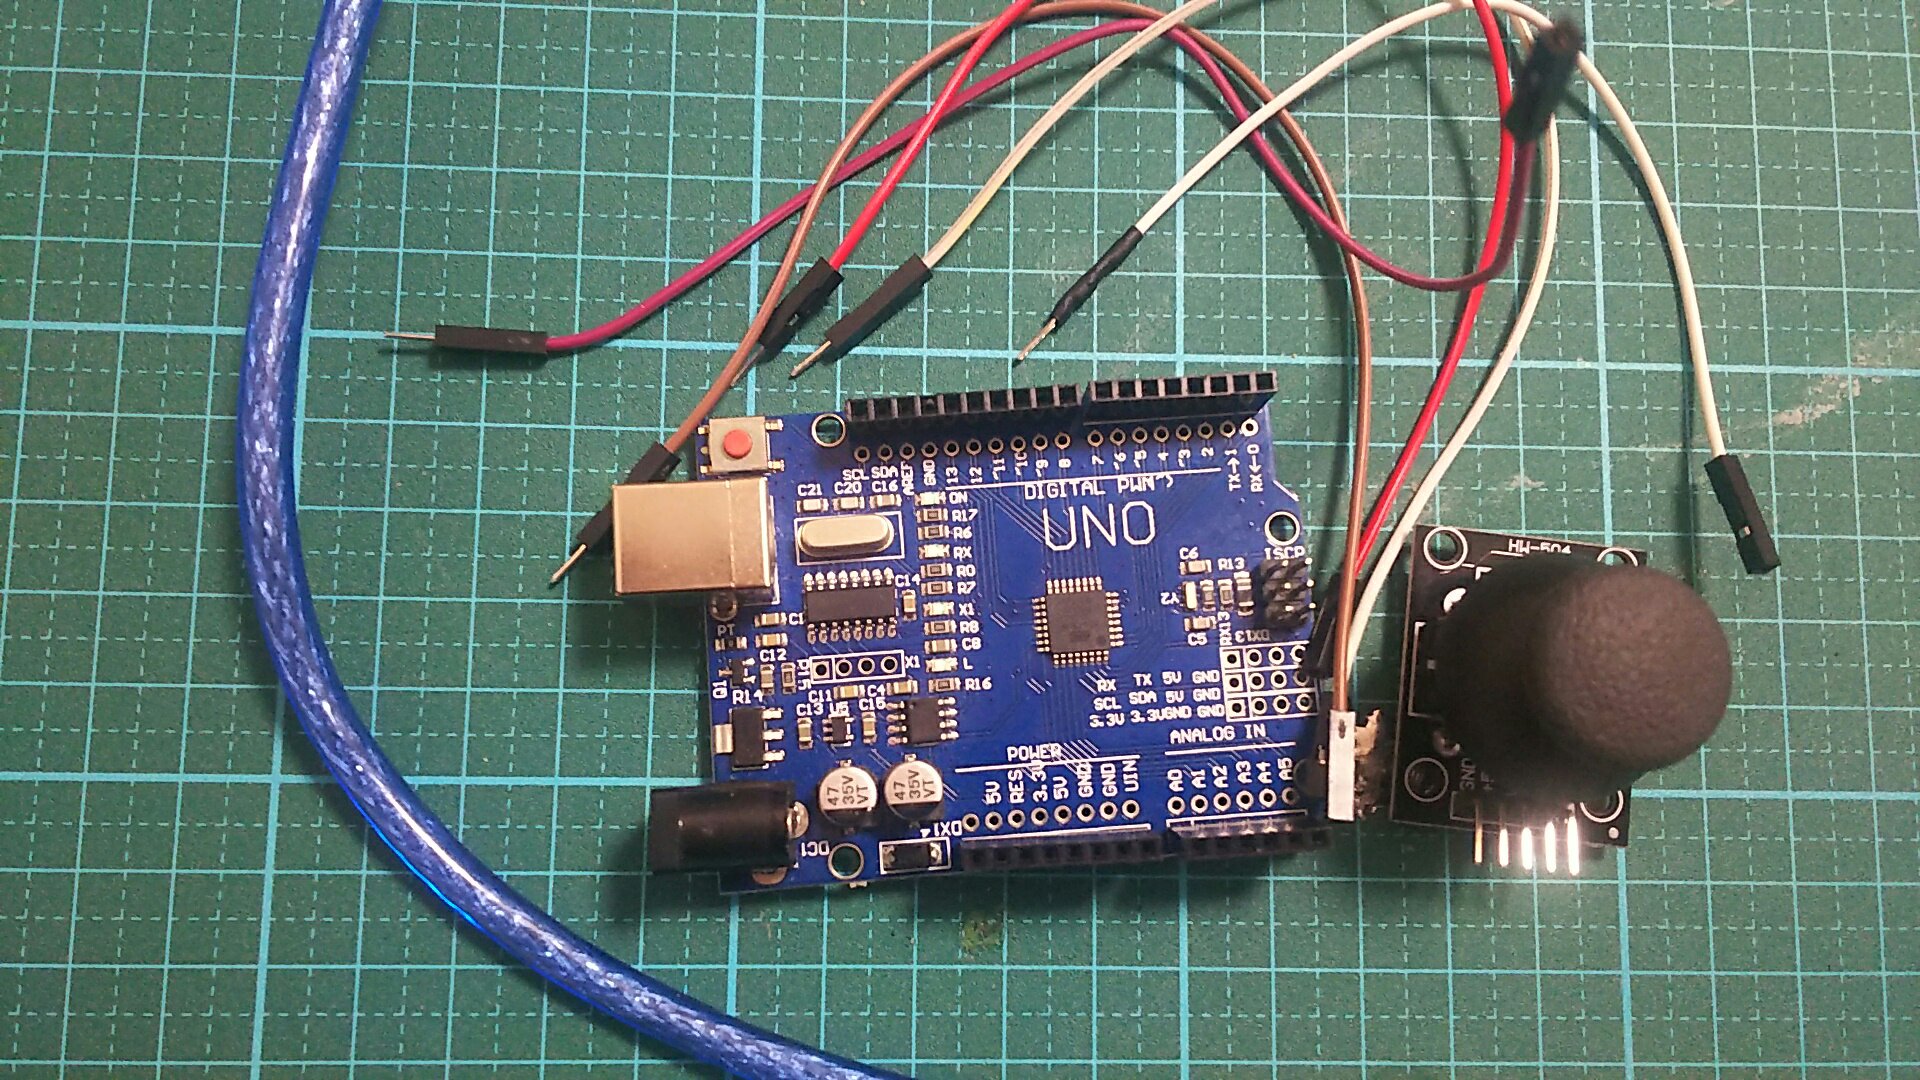 Arduinoを用いてジョイスティックを使ってみる 物を作る者